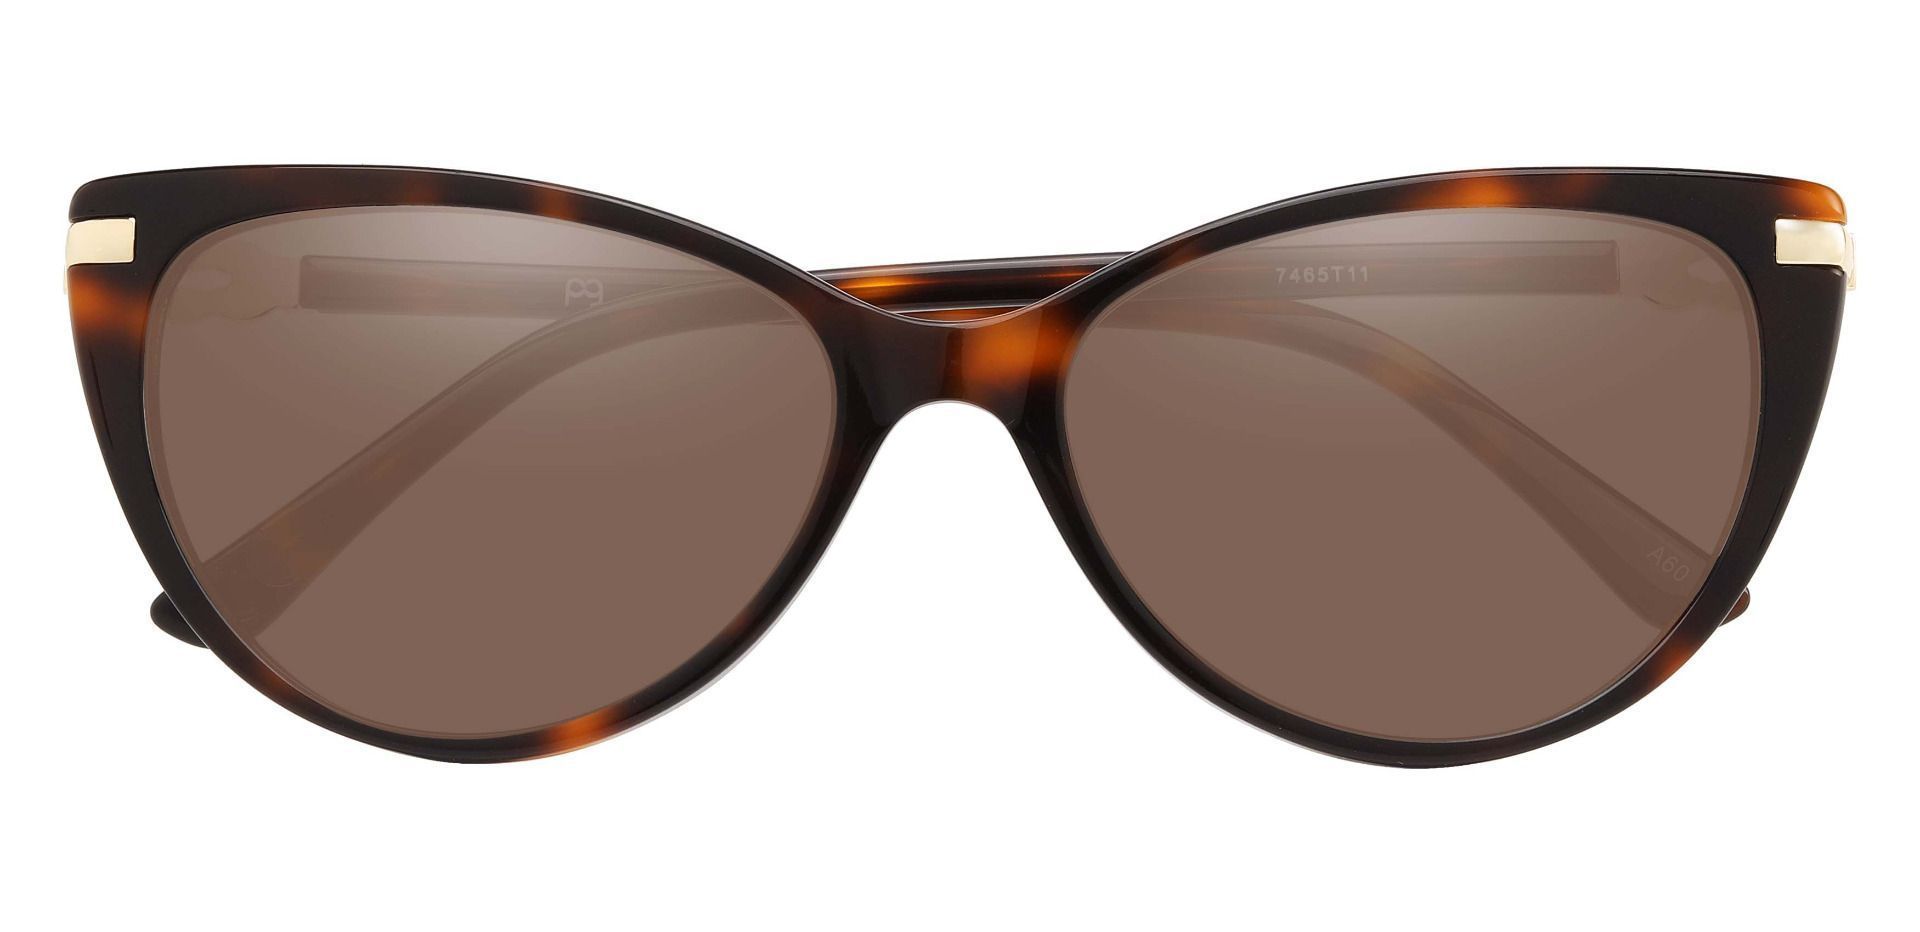 Starla Cat Eye Reading Sunglasses - Tortoise Frame With Brown Lenses